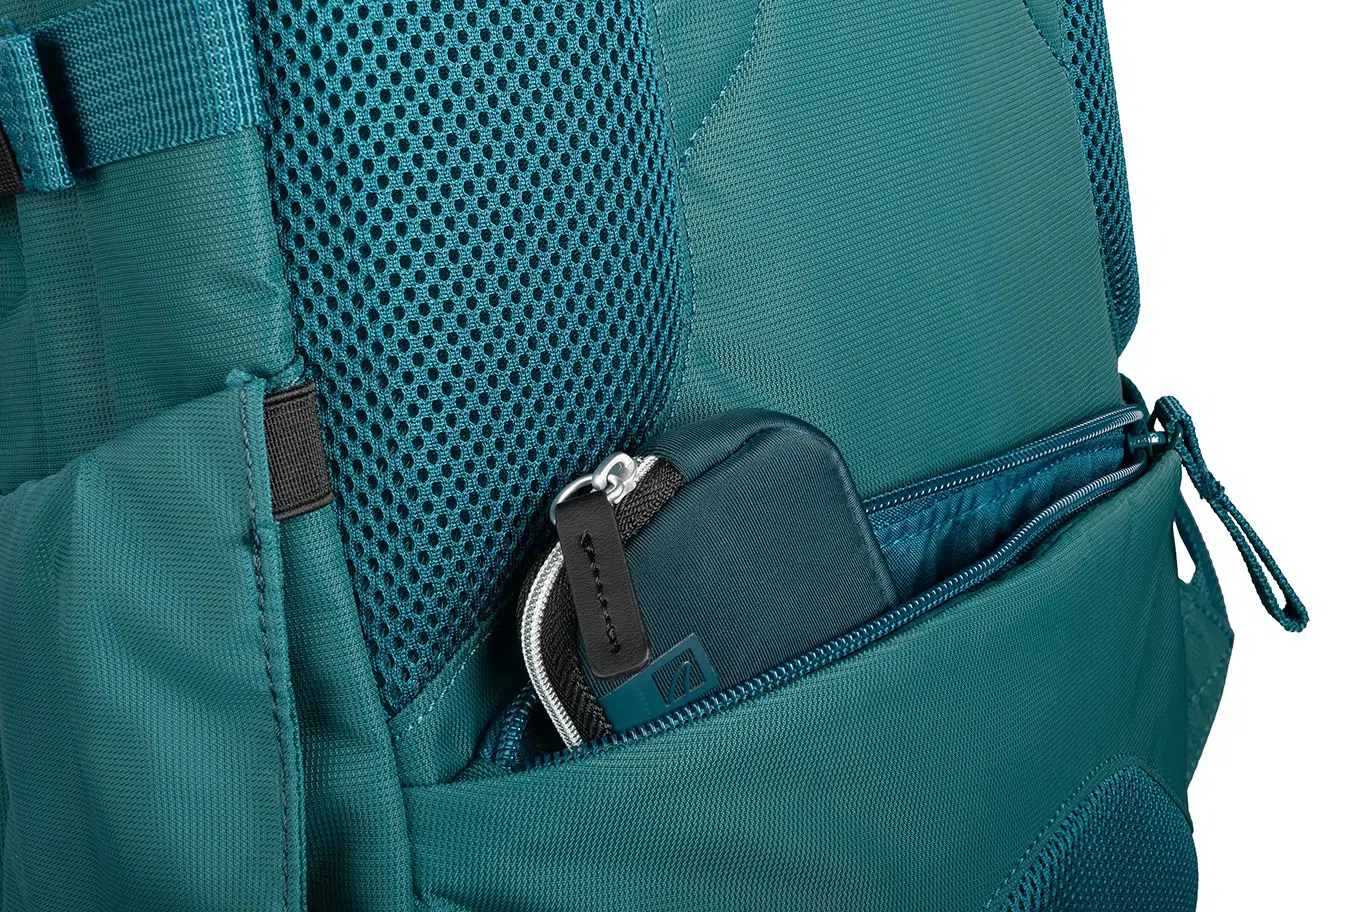 กระเป๋าเป้ Tucano รุ่น Bravo Backpack - MacBook Pro 15" / Notebook up to 15.6" - ฟ้า